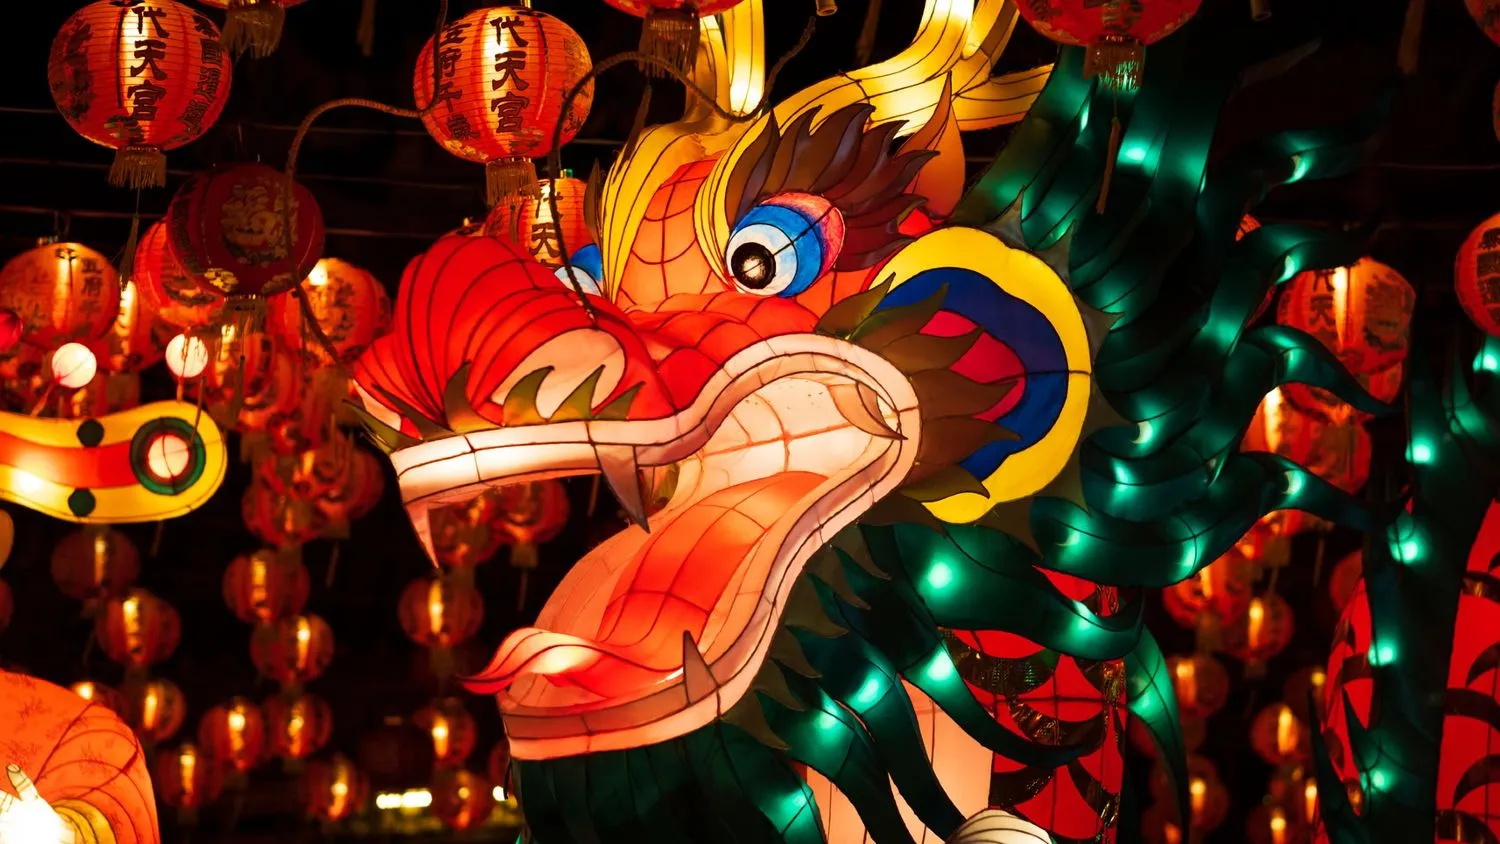 eine leuchtend bunte, drachenförmige Laterne, die nachts beleuchtet wird, umgeben von roten, kugelförmigen Laternen mit chinesischen Schriftzeichen